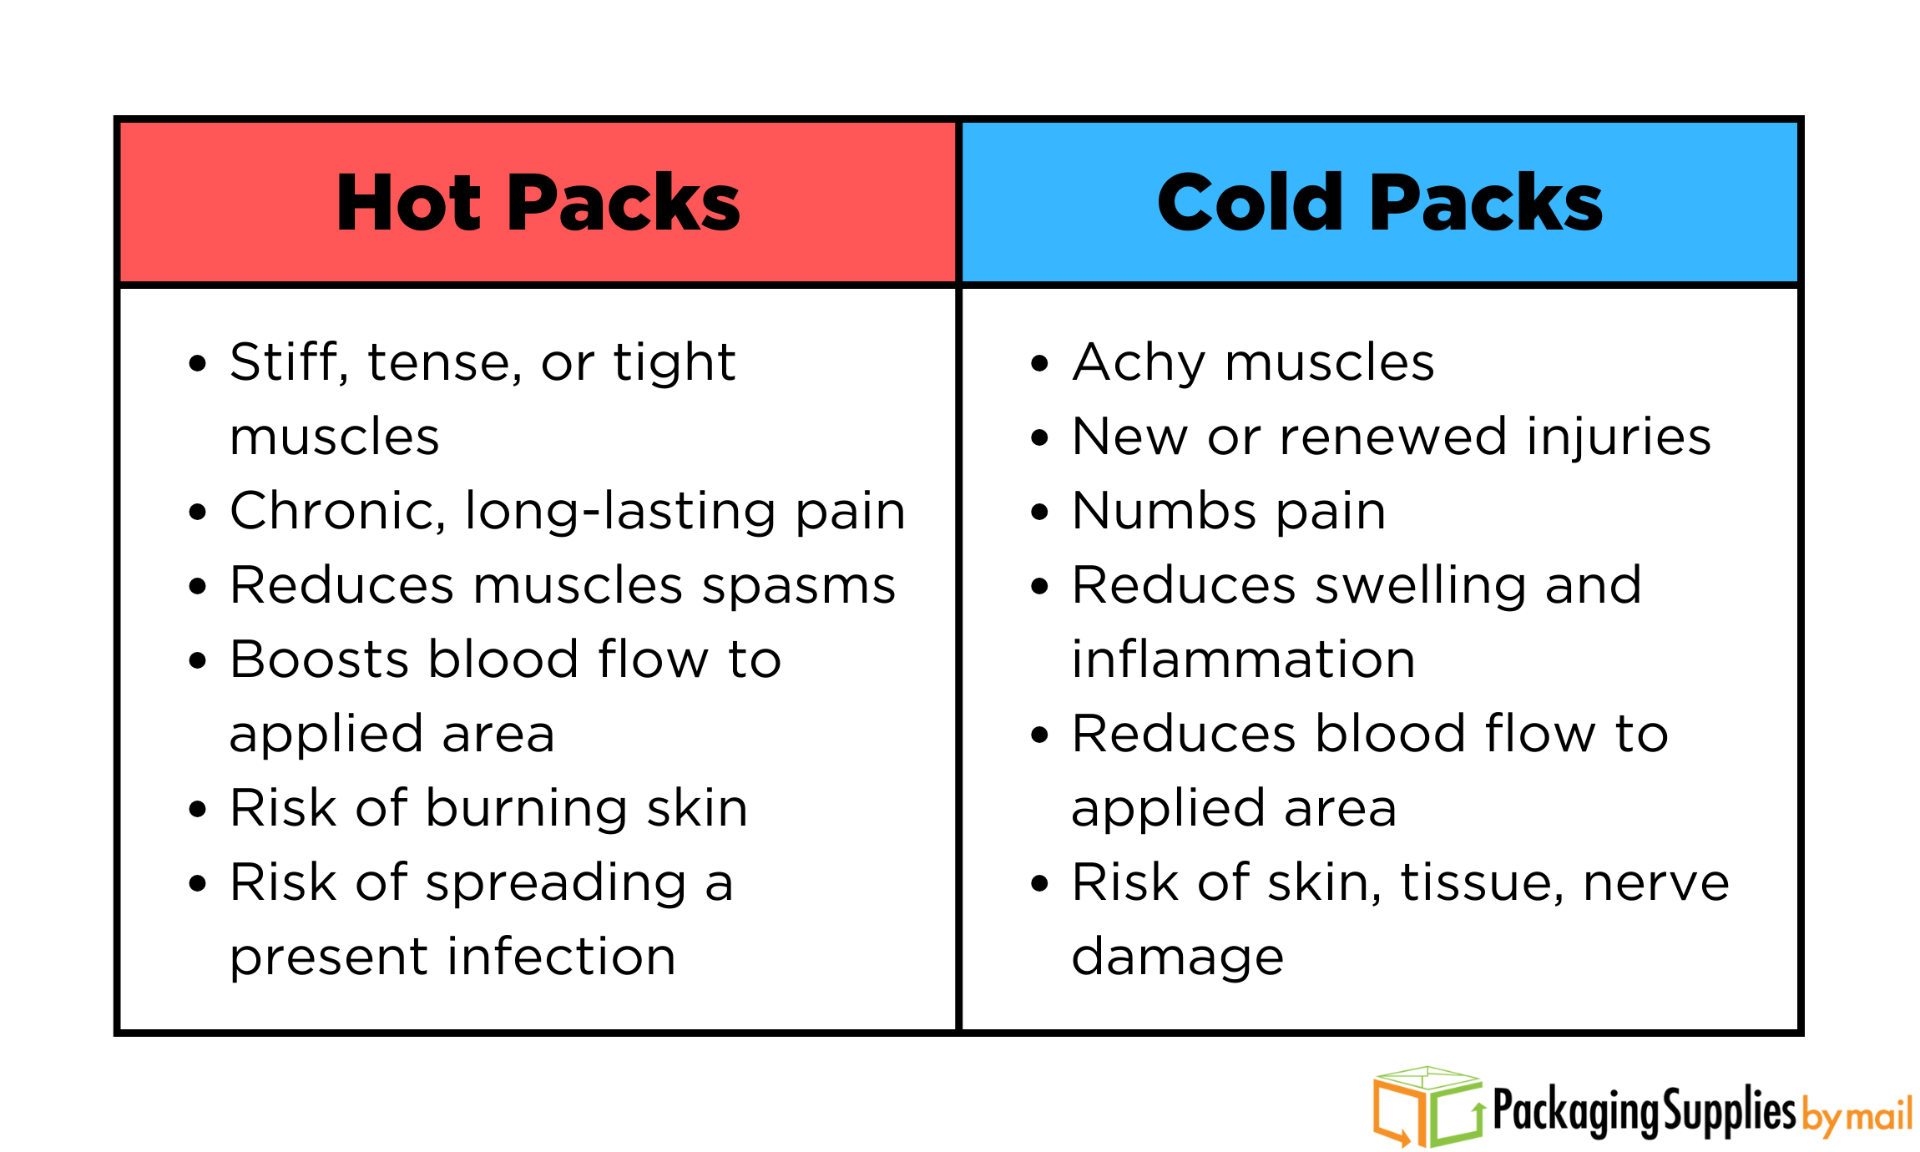 Hot Packs vs. Cold Packs